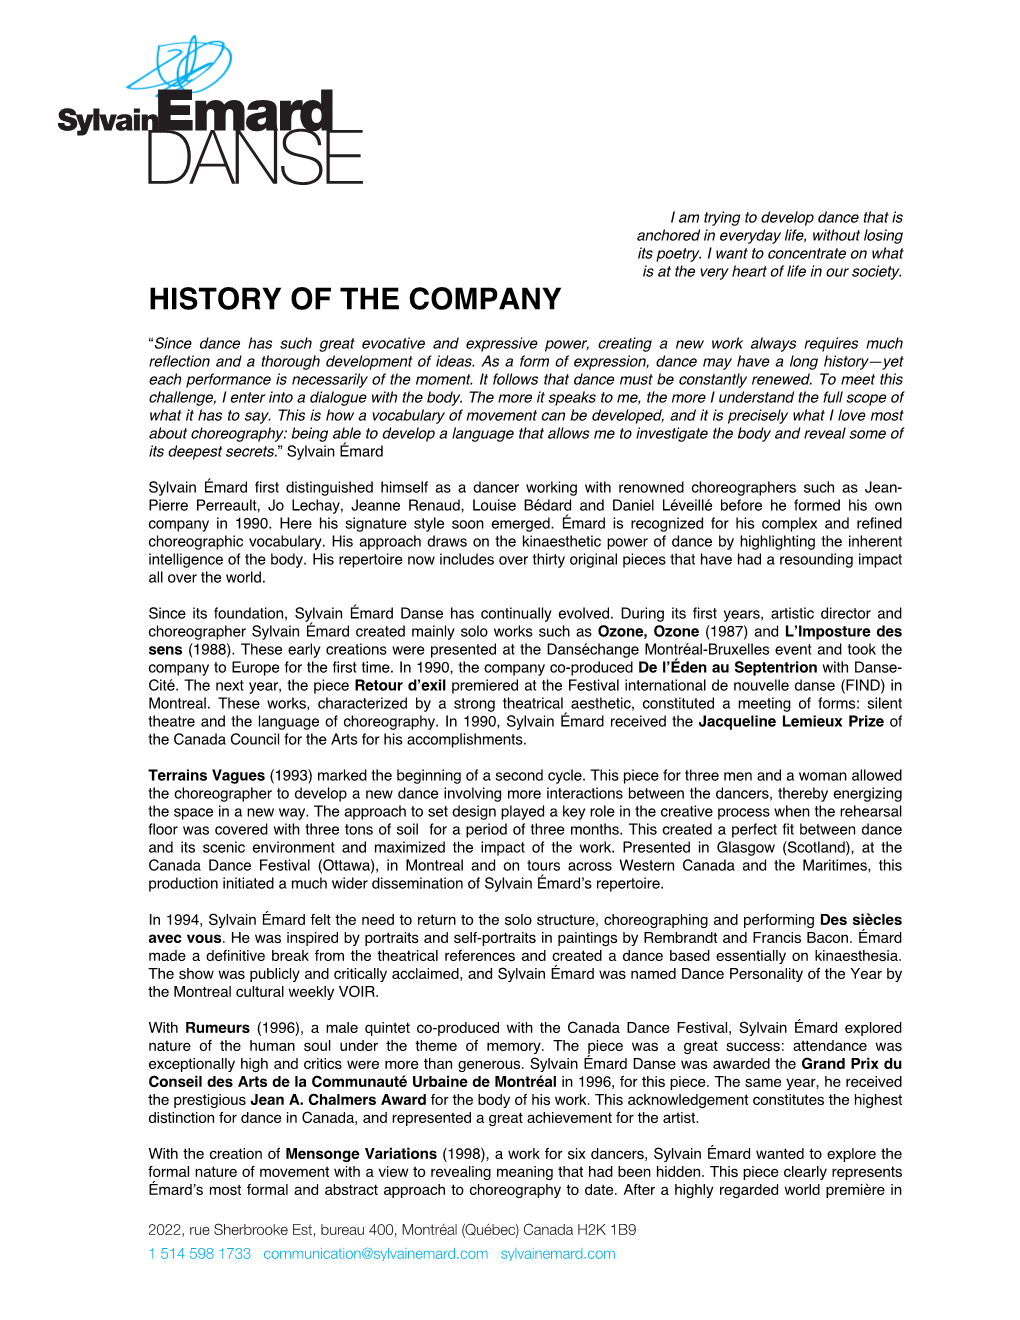 History of the Company